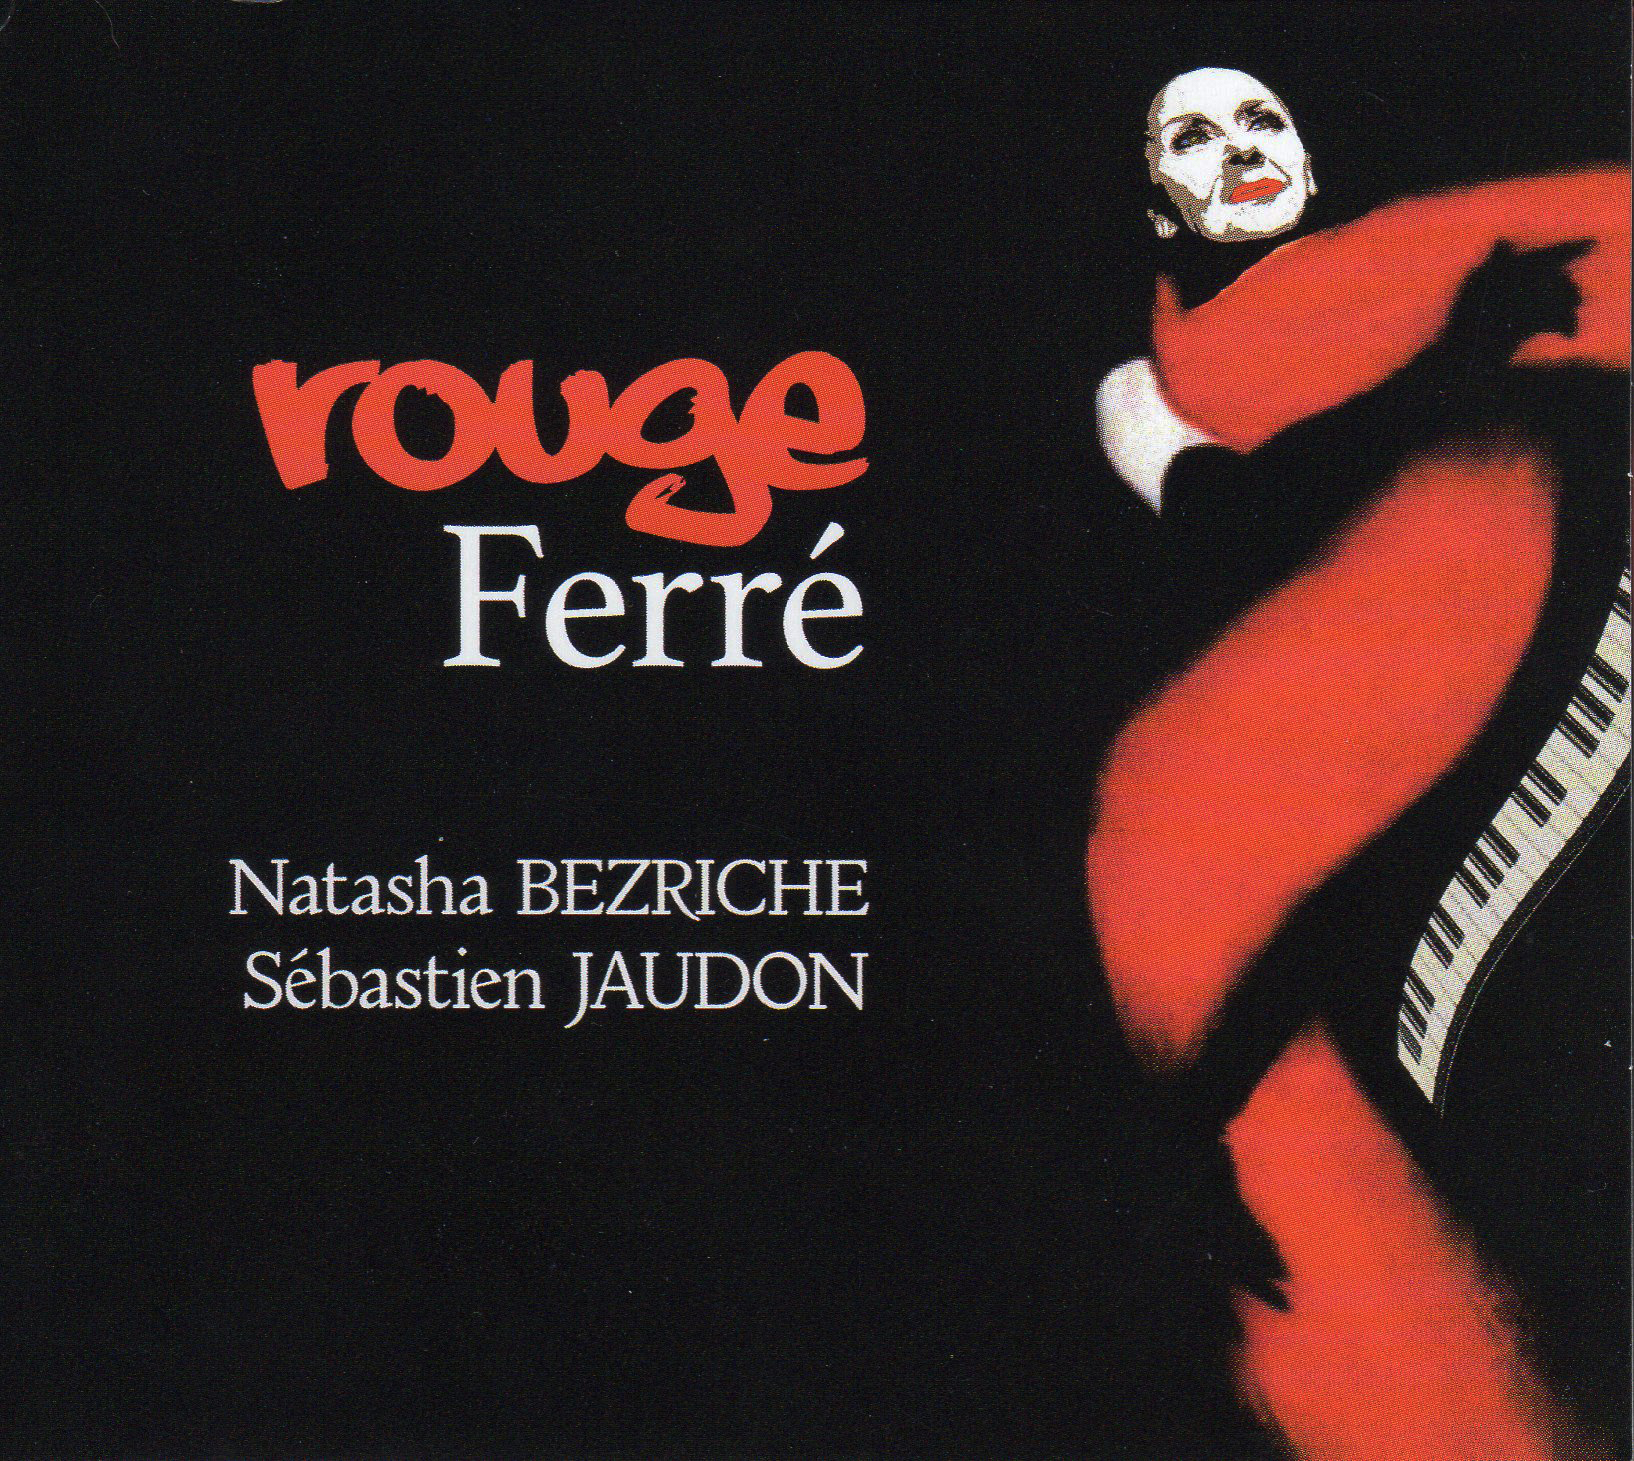 Natasha Bezriche - Rouge Ferré